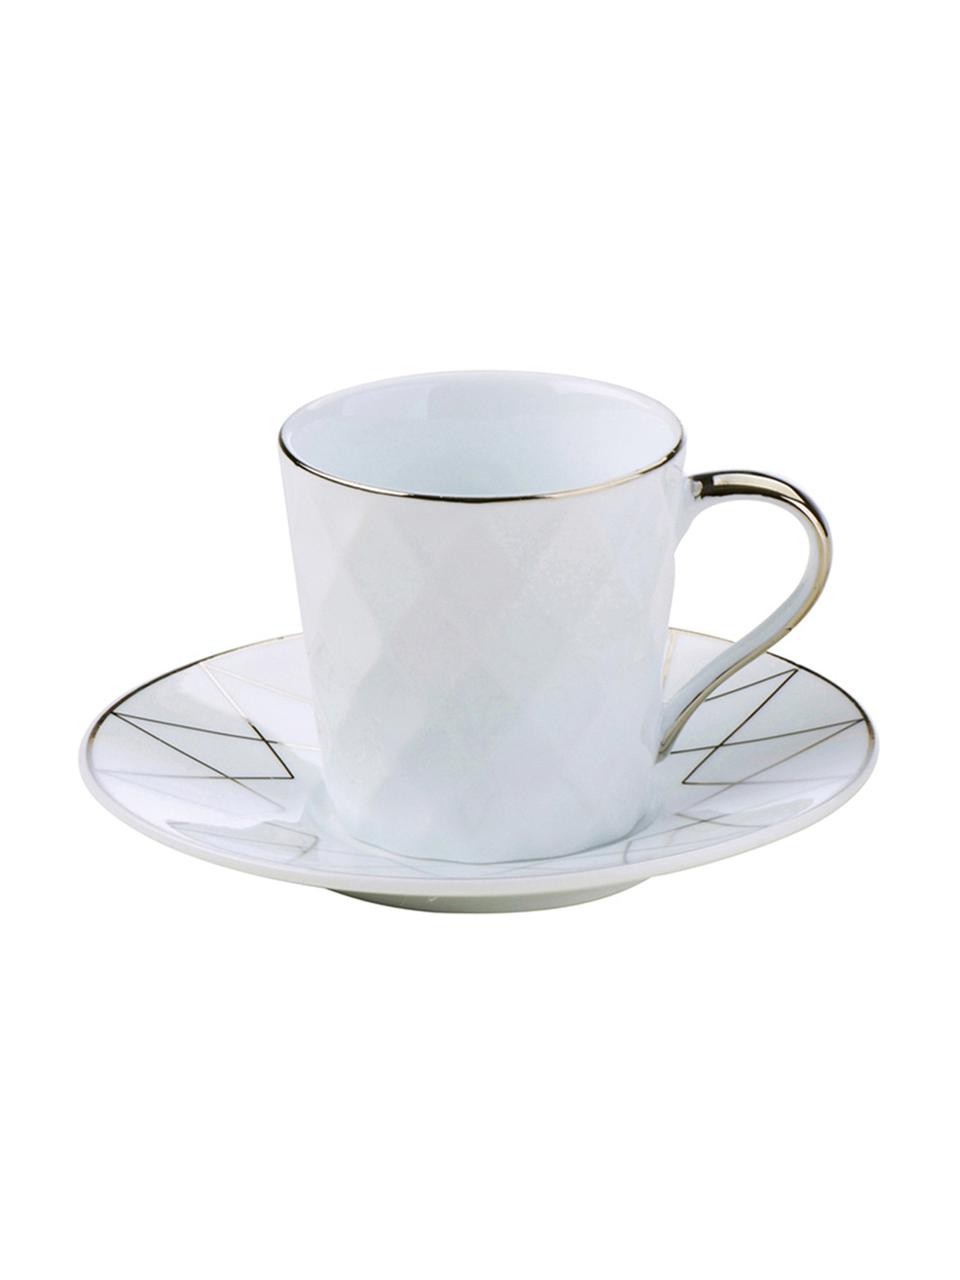 Komplet filiżanek do espresso Lux, 6 elem., Porcelana, Biały, odcienie platynowego, Ø 12 x W 6 cm